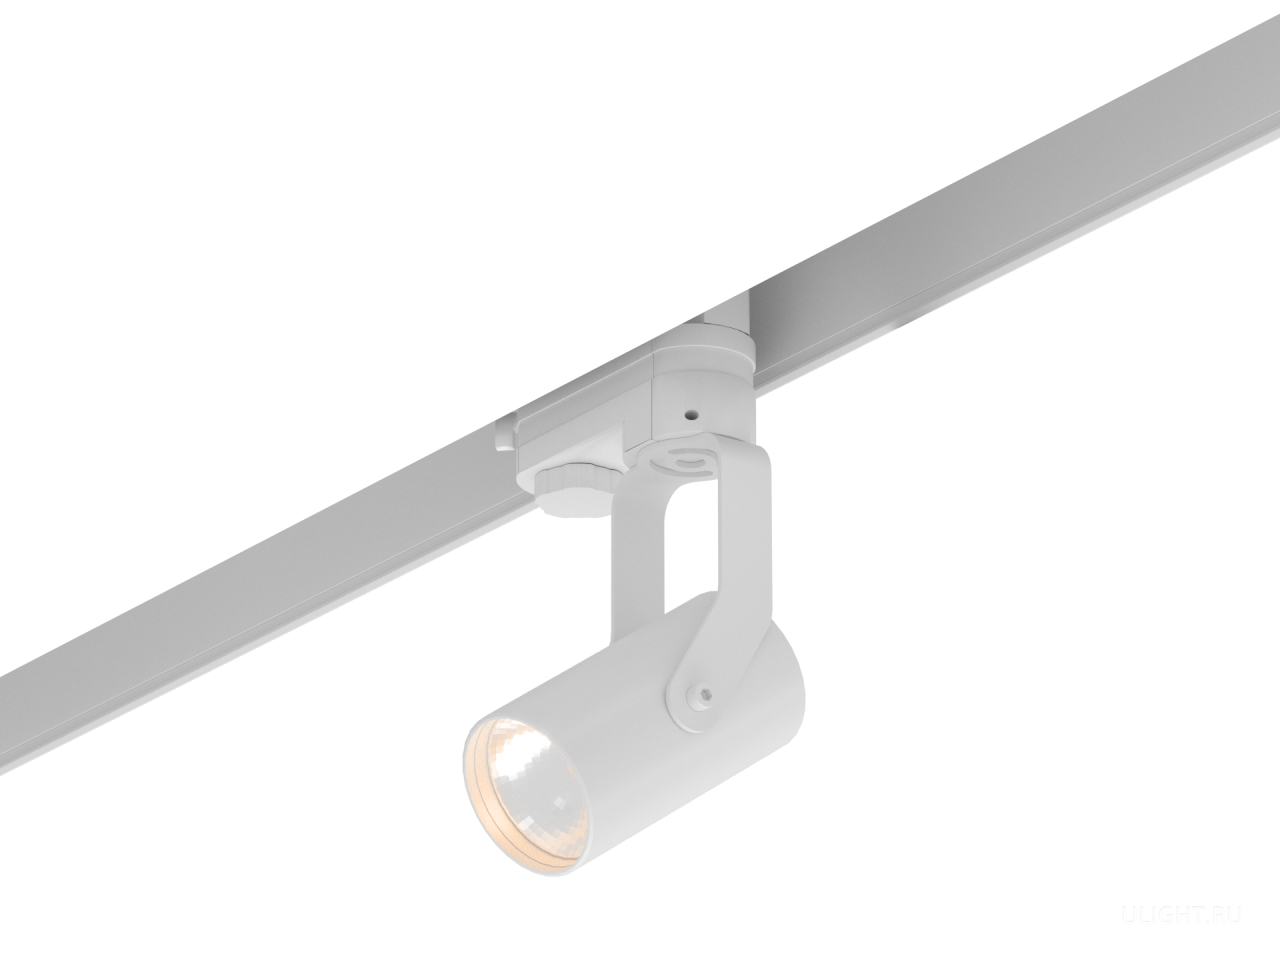 Цилиндрический корпус диаметром 55 мм для ламп с цоколем GU10. 
Светильник идеально подойдет для подсветки прикроватной тумбочки или отдельных предметов интерьера. Узкий угол света позволяет создавать световые акценты.